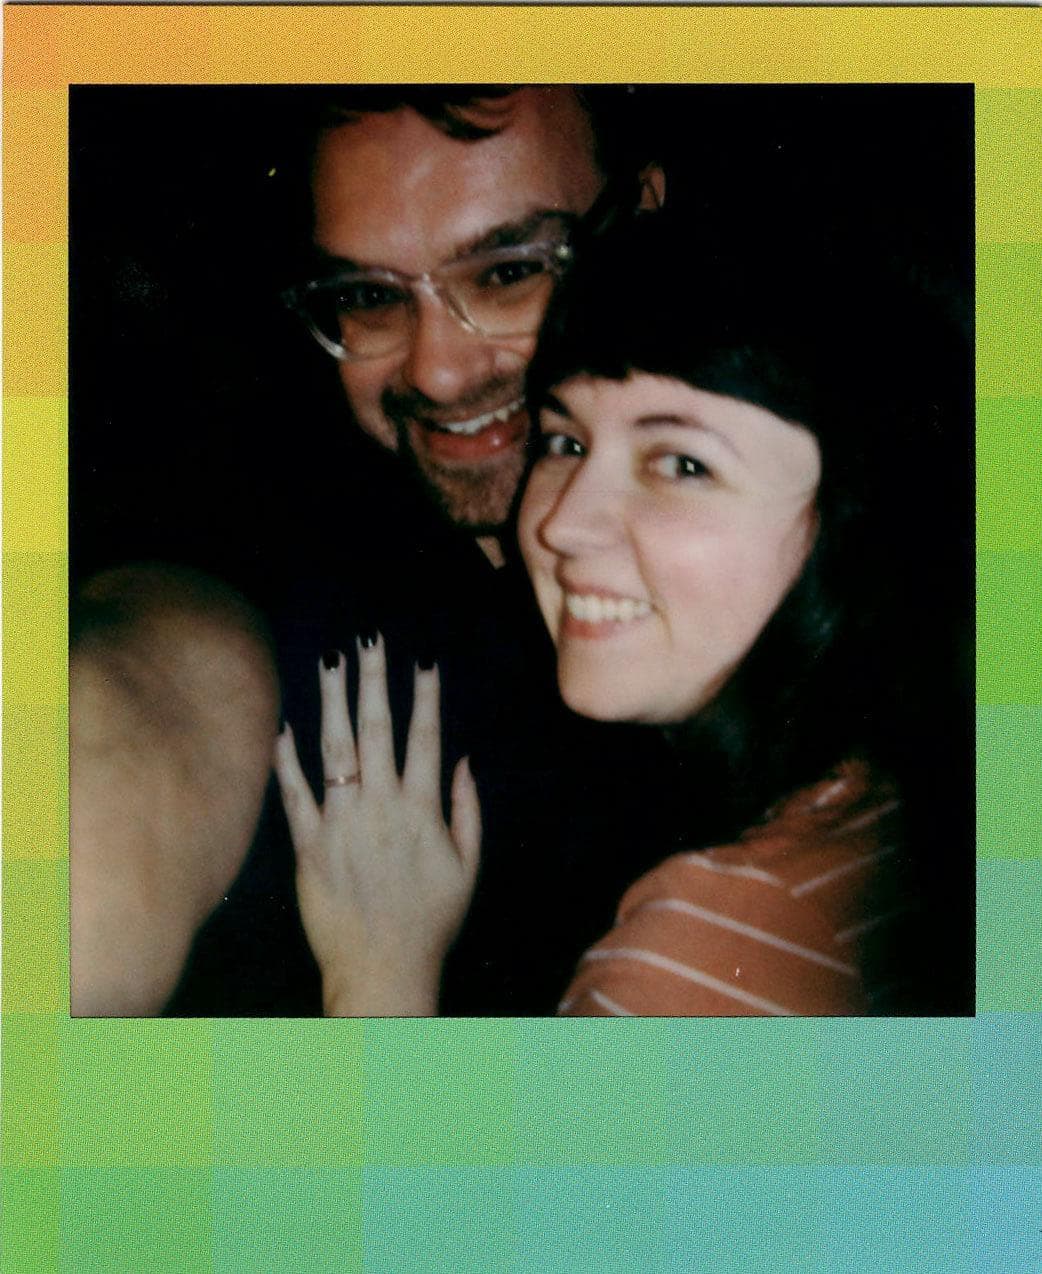 We got engaged!